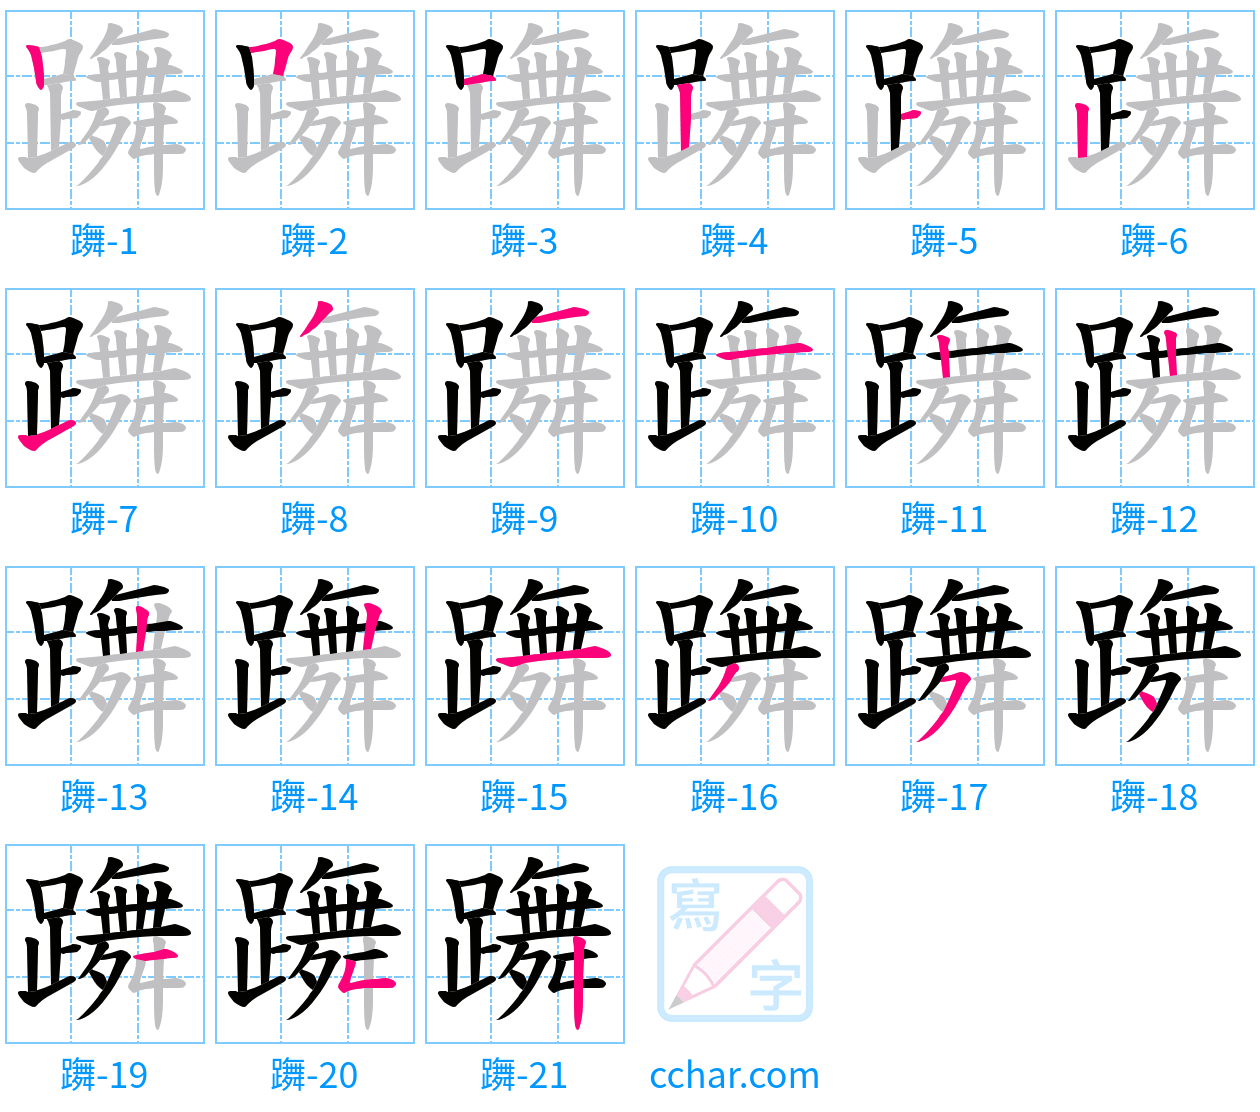 躌 stroke order step-by-step diagram